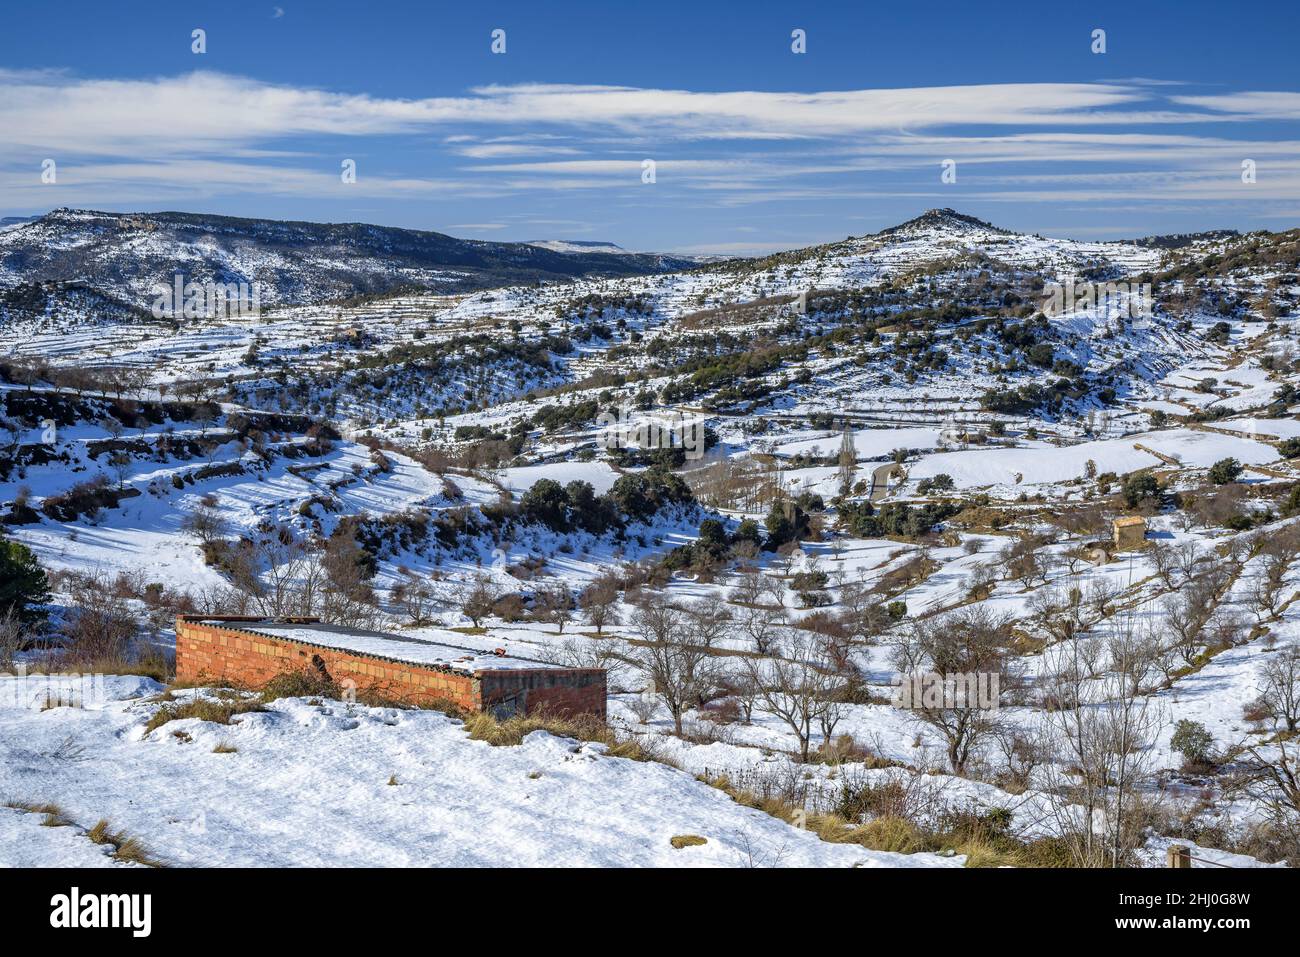 Snowy region of Els Ports (Los Puertos) in winter, near Morella (province of Castellón, Valencian Community, Spain) ESP: Región de Els Ports nevada Stock Photo